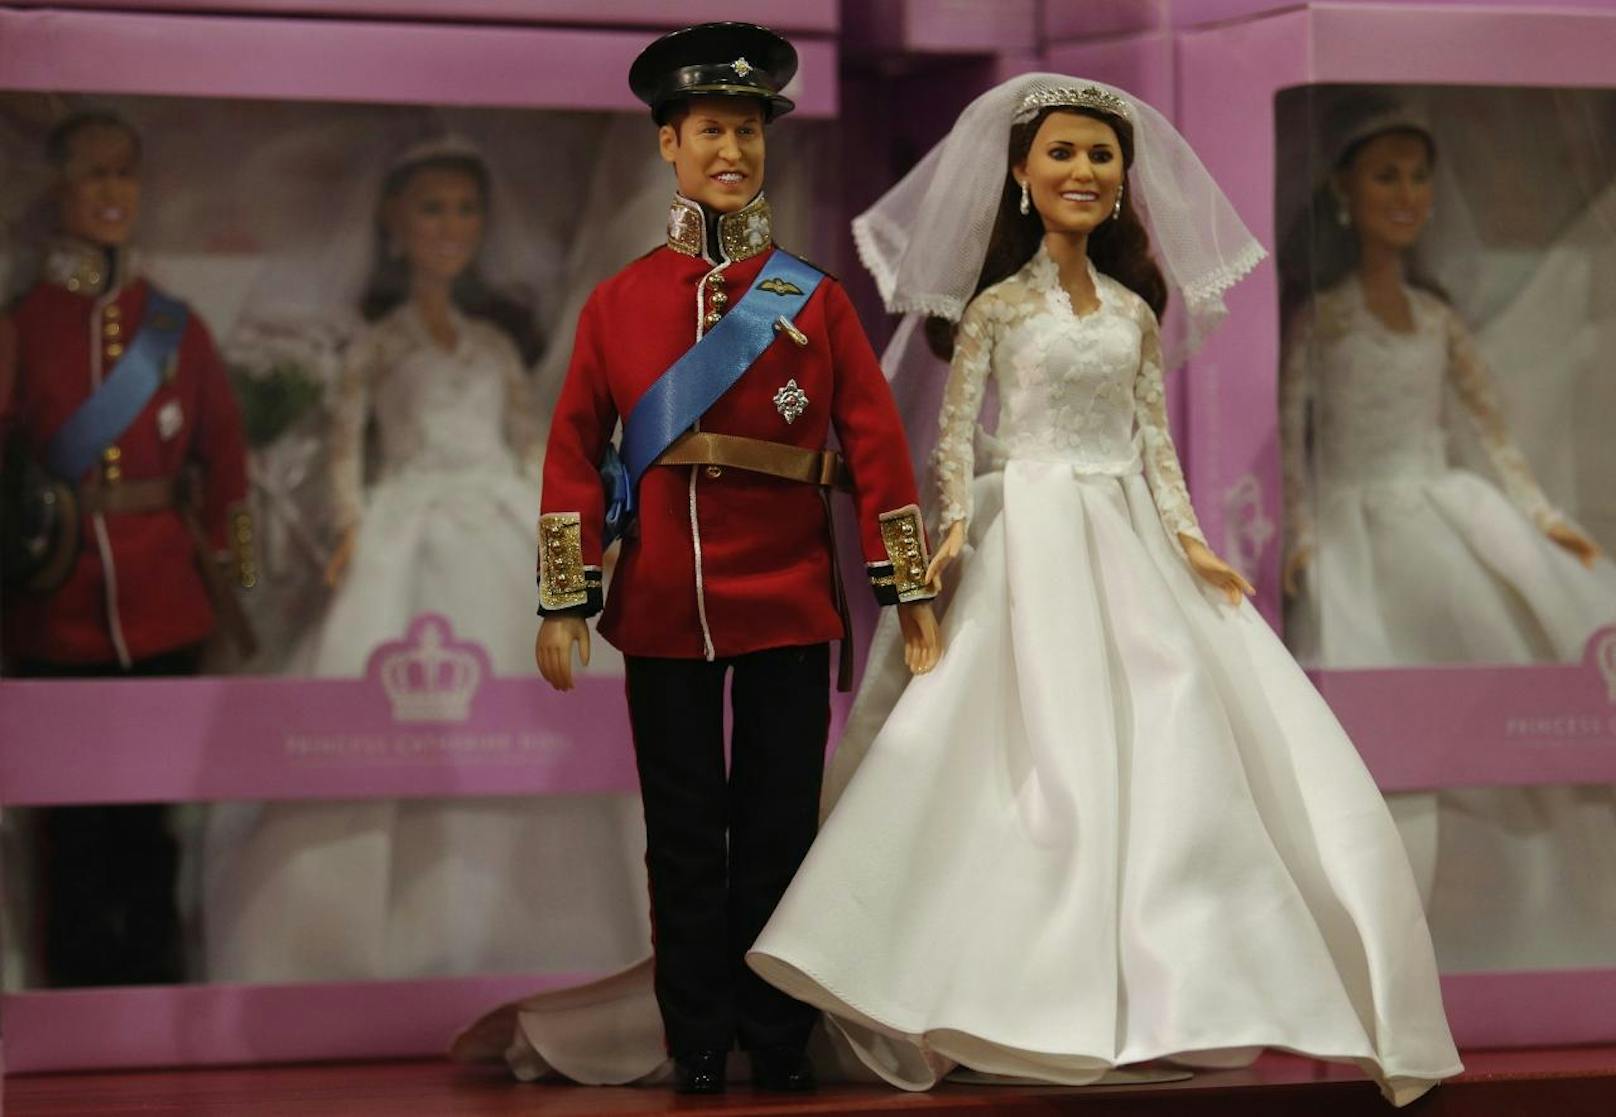 Die ganze Welt ist im Royal Wedding Fieber. Besoners beliebt: Kitschige Andenken, wie hier das royale Paar bei ihrer Puppen-Hochzeit